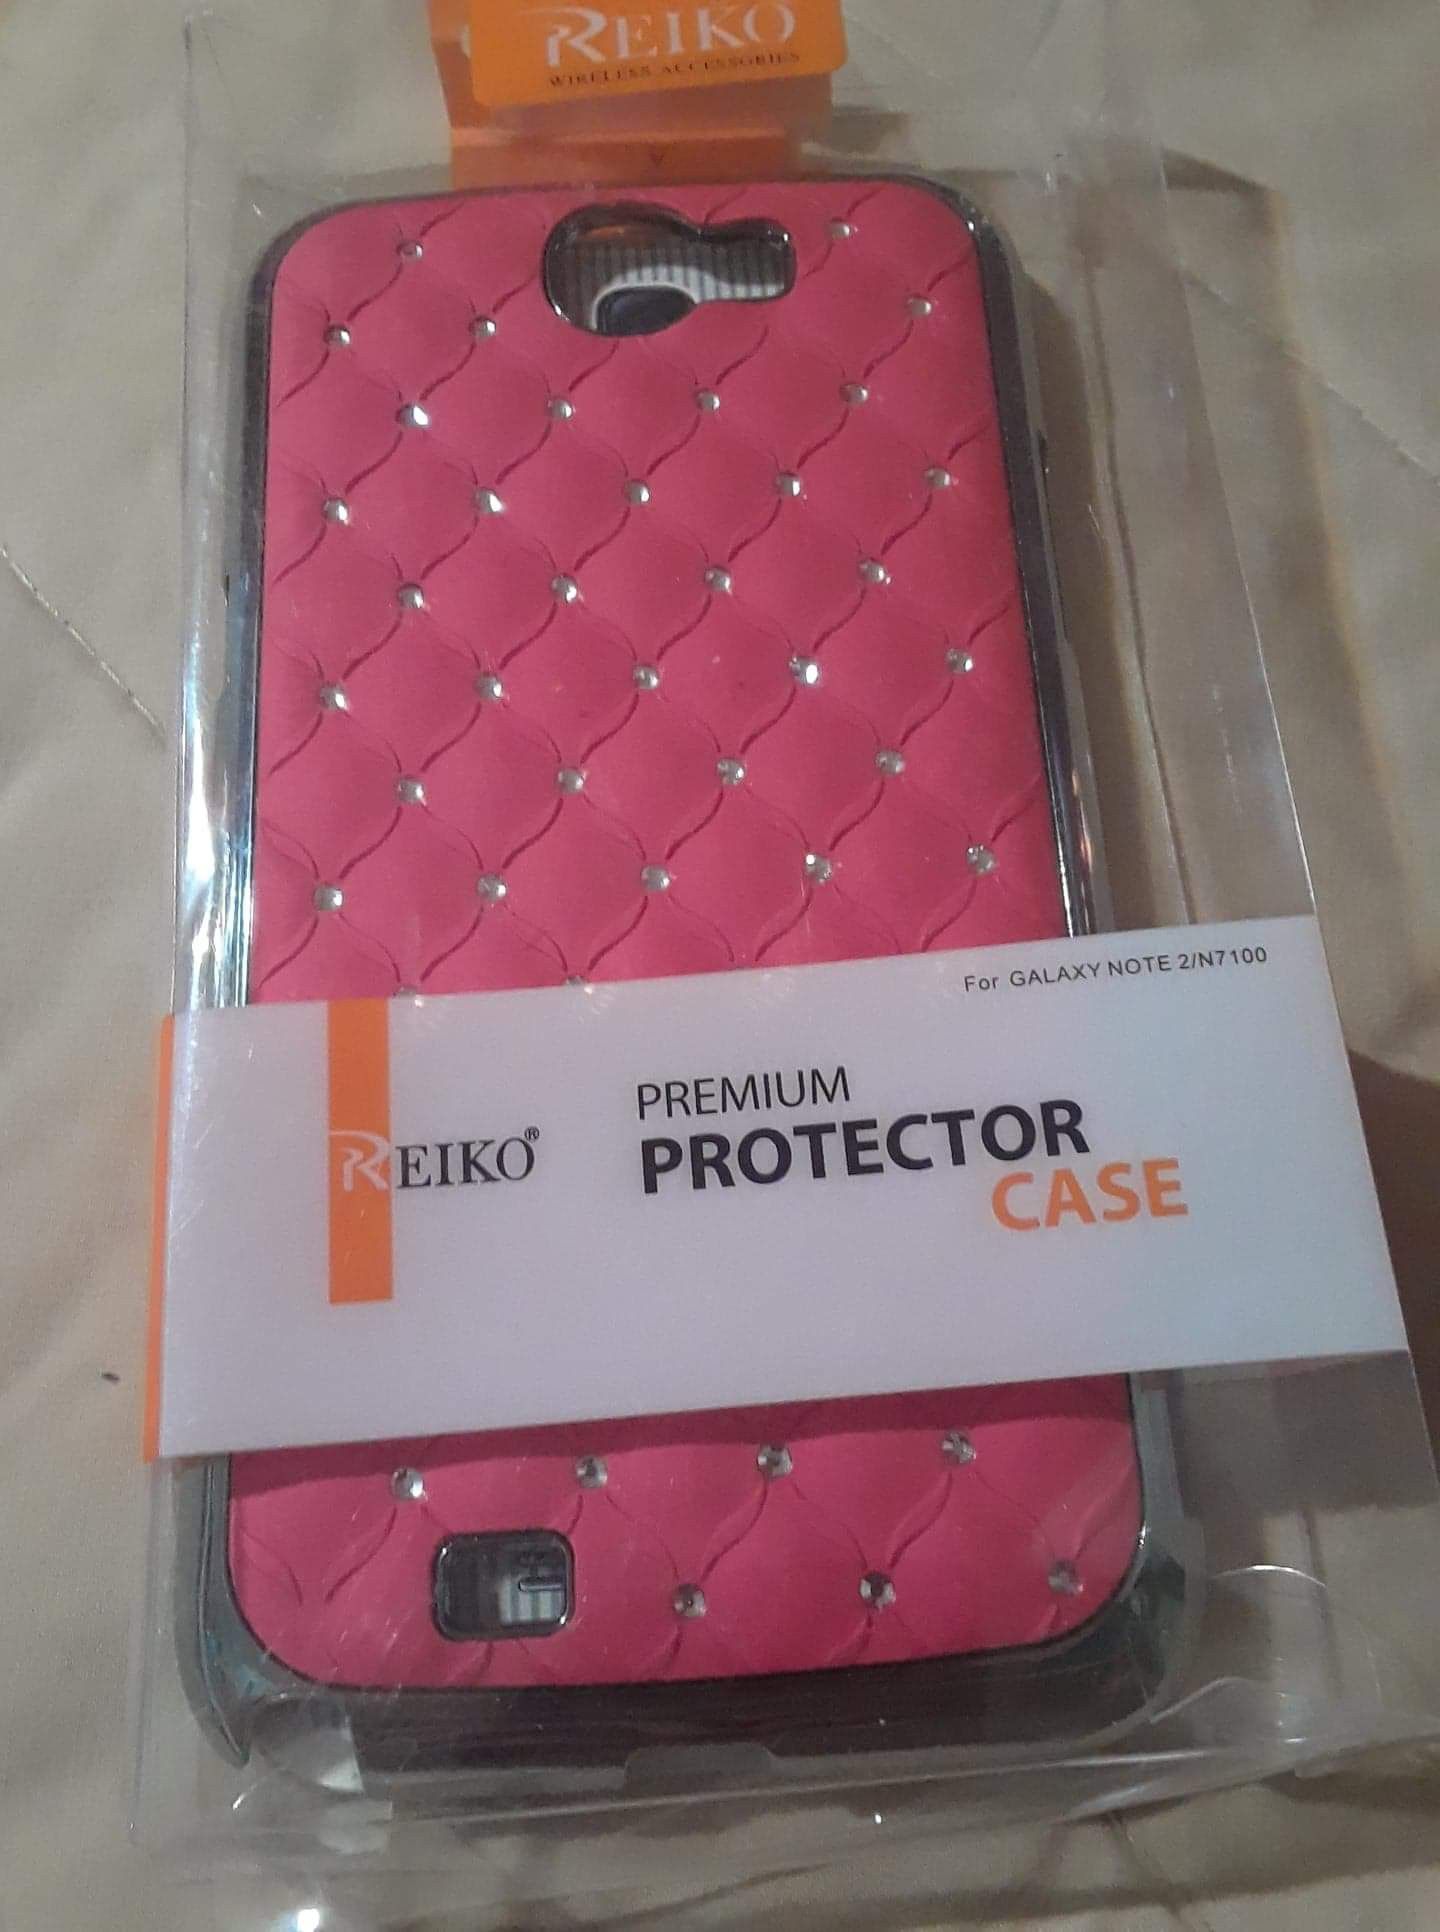 Protector Case Galaxy Note 2